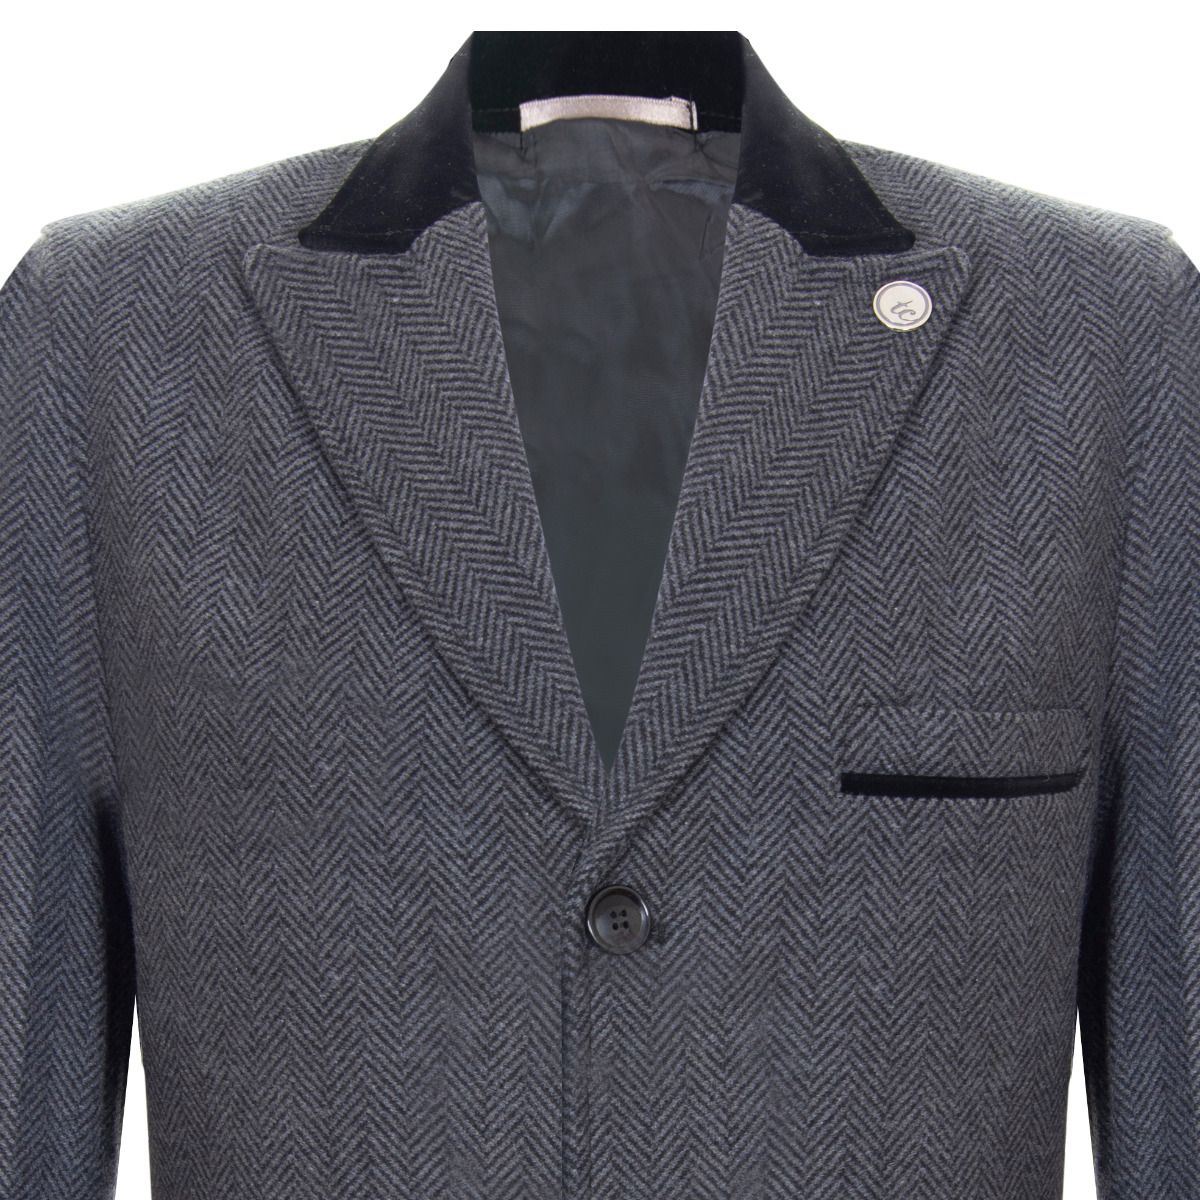 Mens 3/4 Long Grey Crombie Overcoat Jacket Herringbone Tweed Coat Peaky Blinder - Upperclass Fashions 